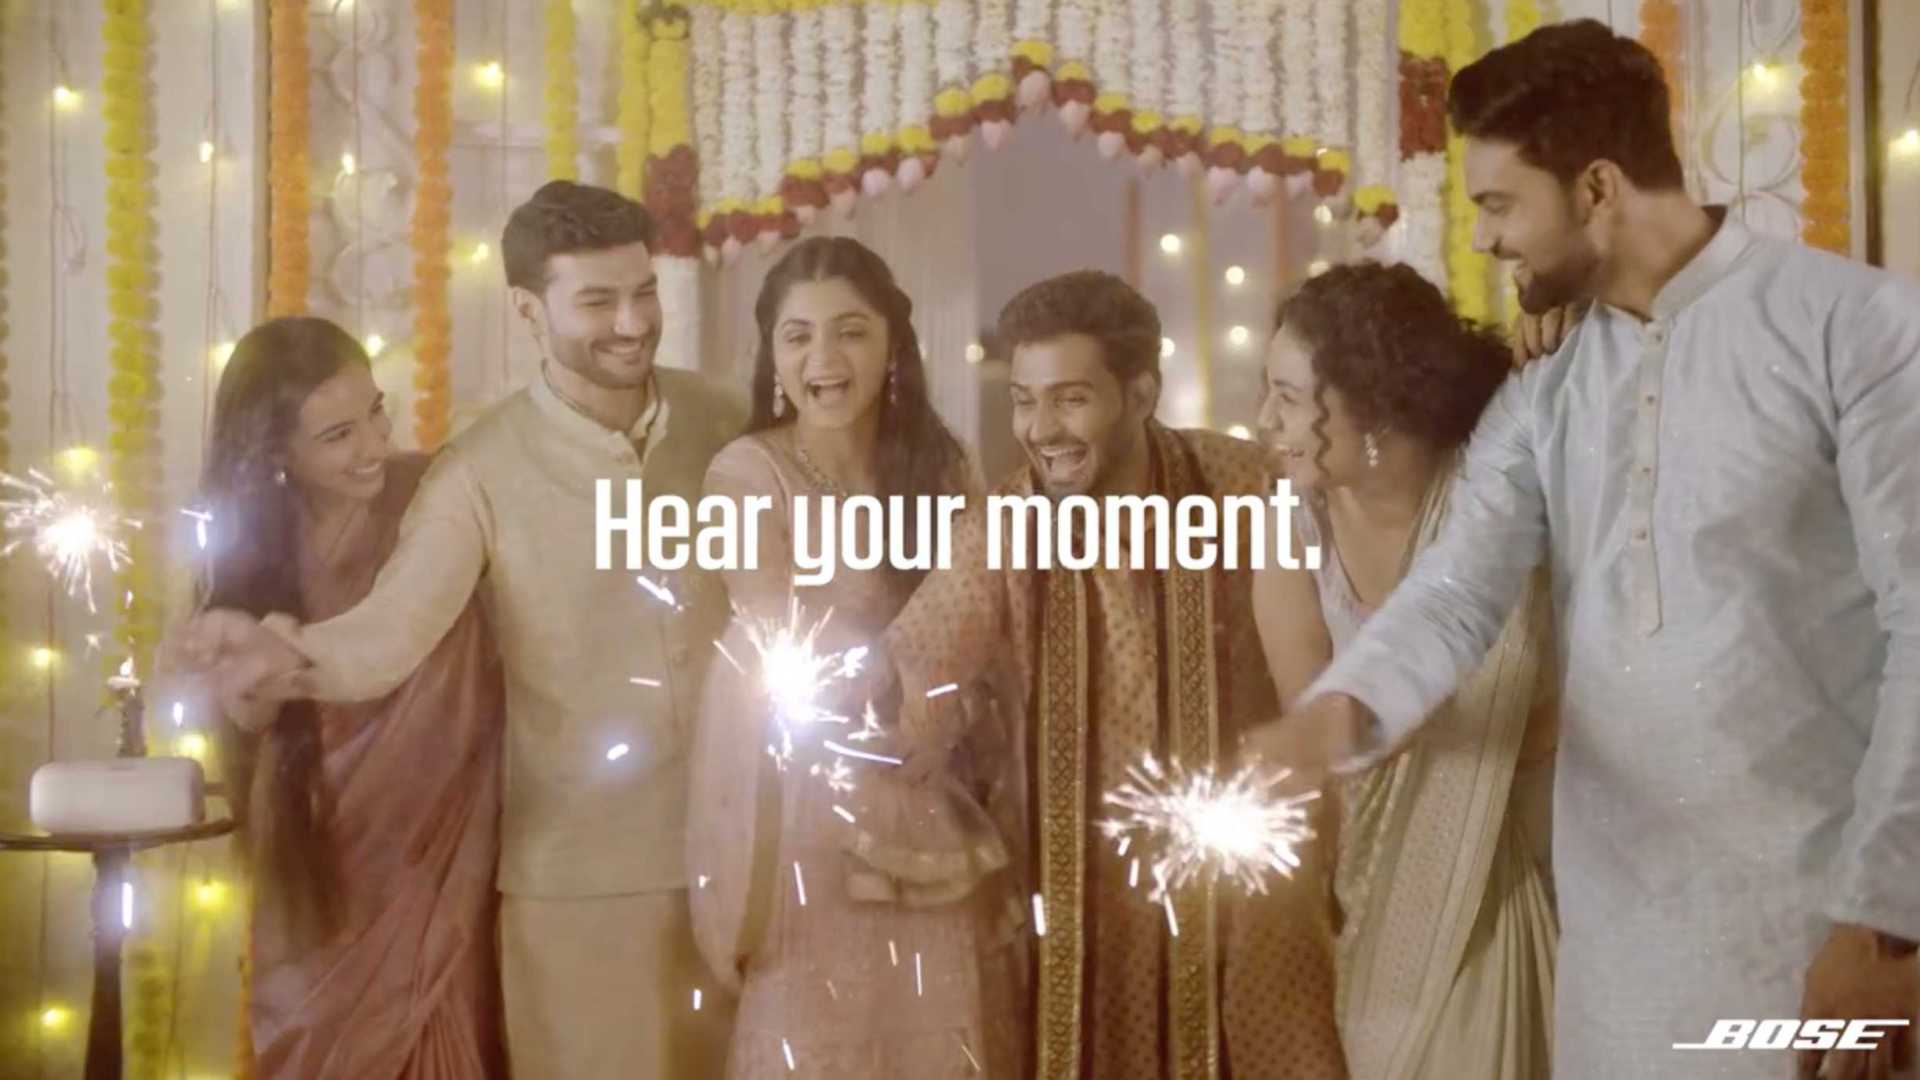 印度超火爆社交广告Bose音箱《聆听你的时刻》